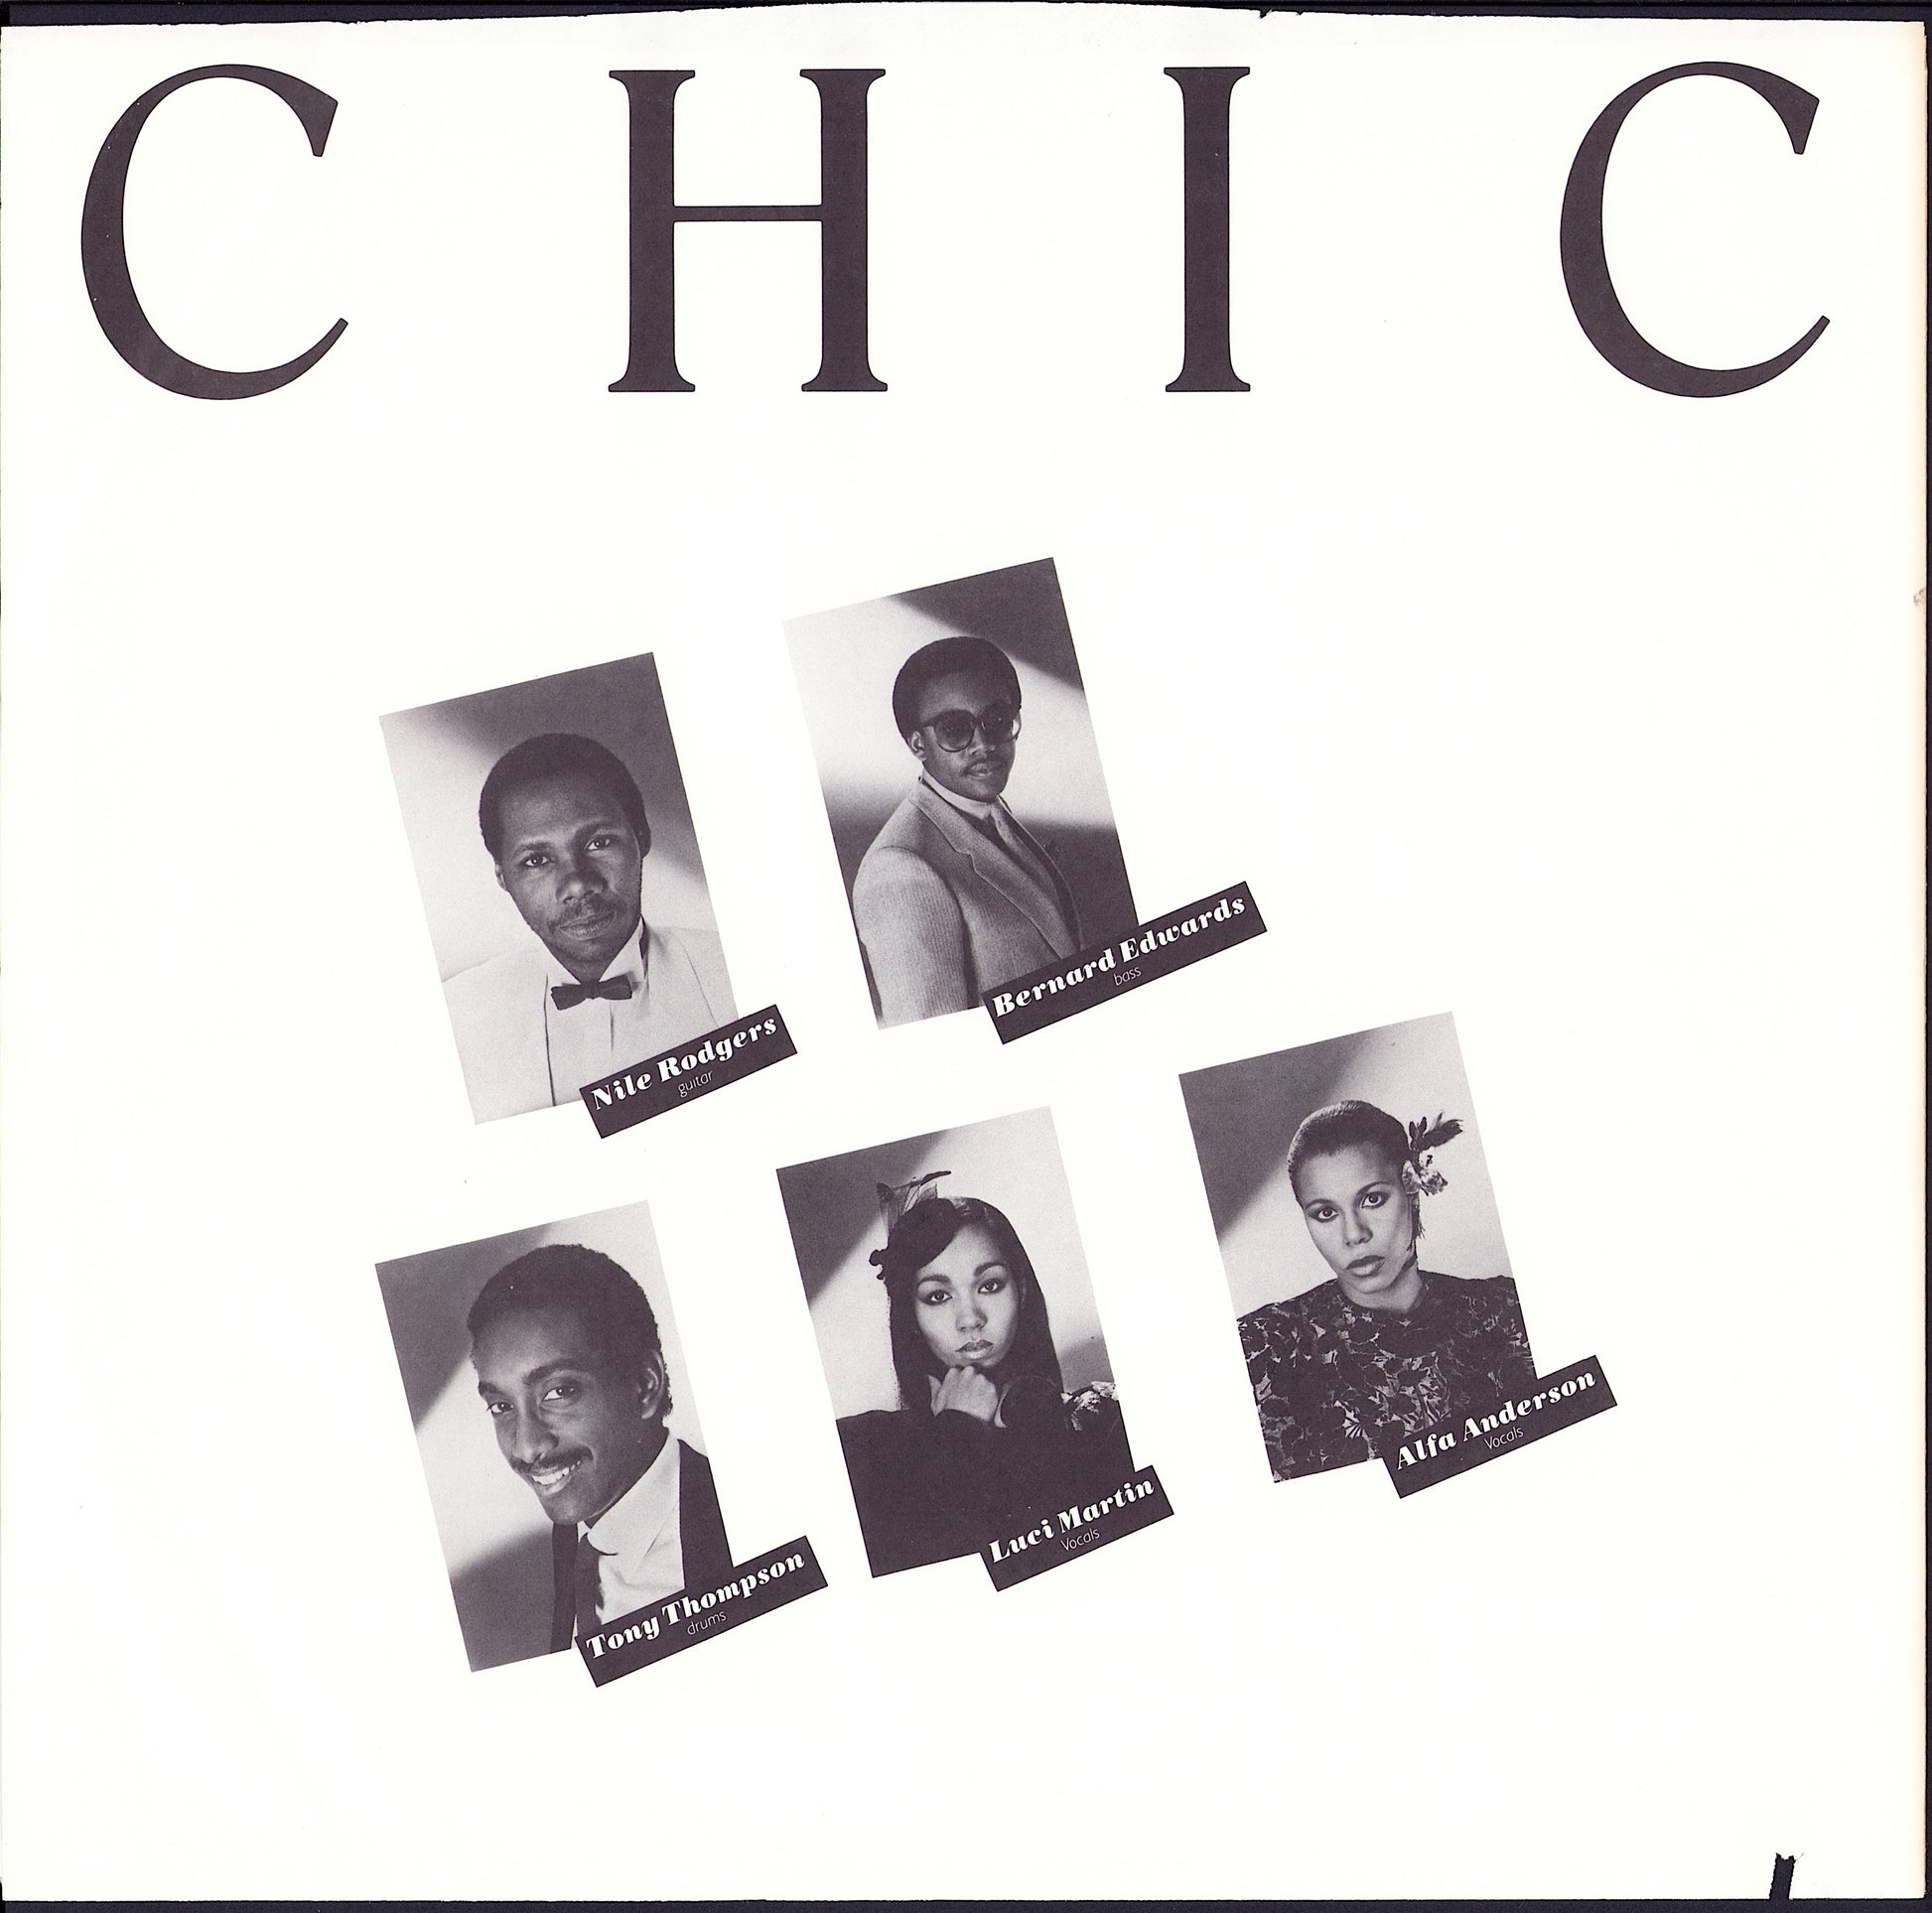 Chic - Real People Vinyl LP